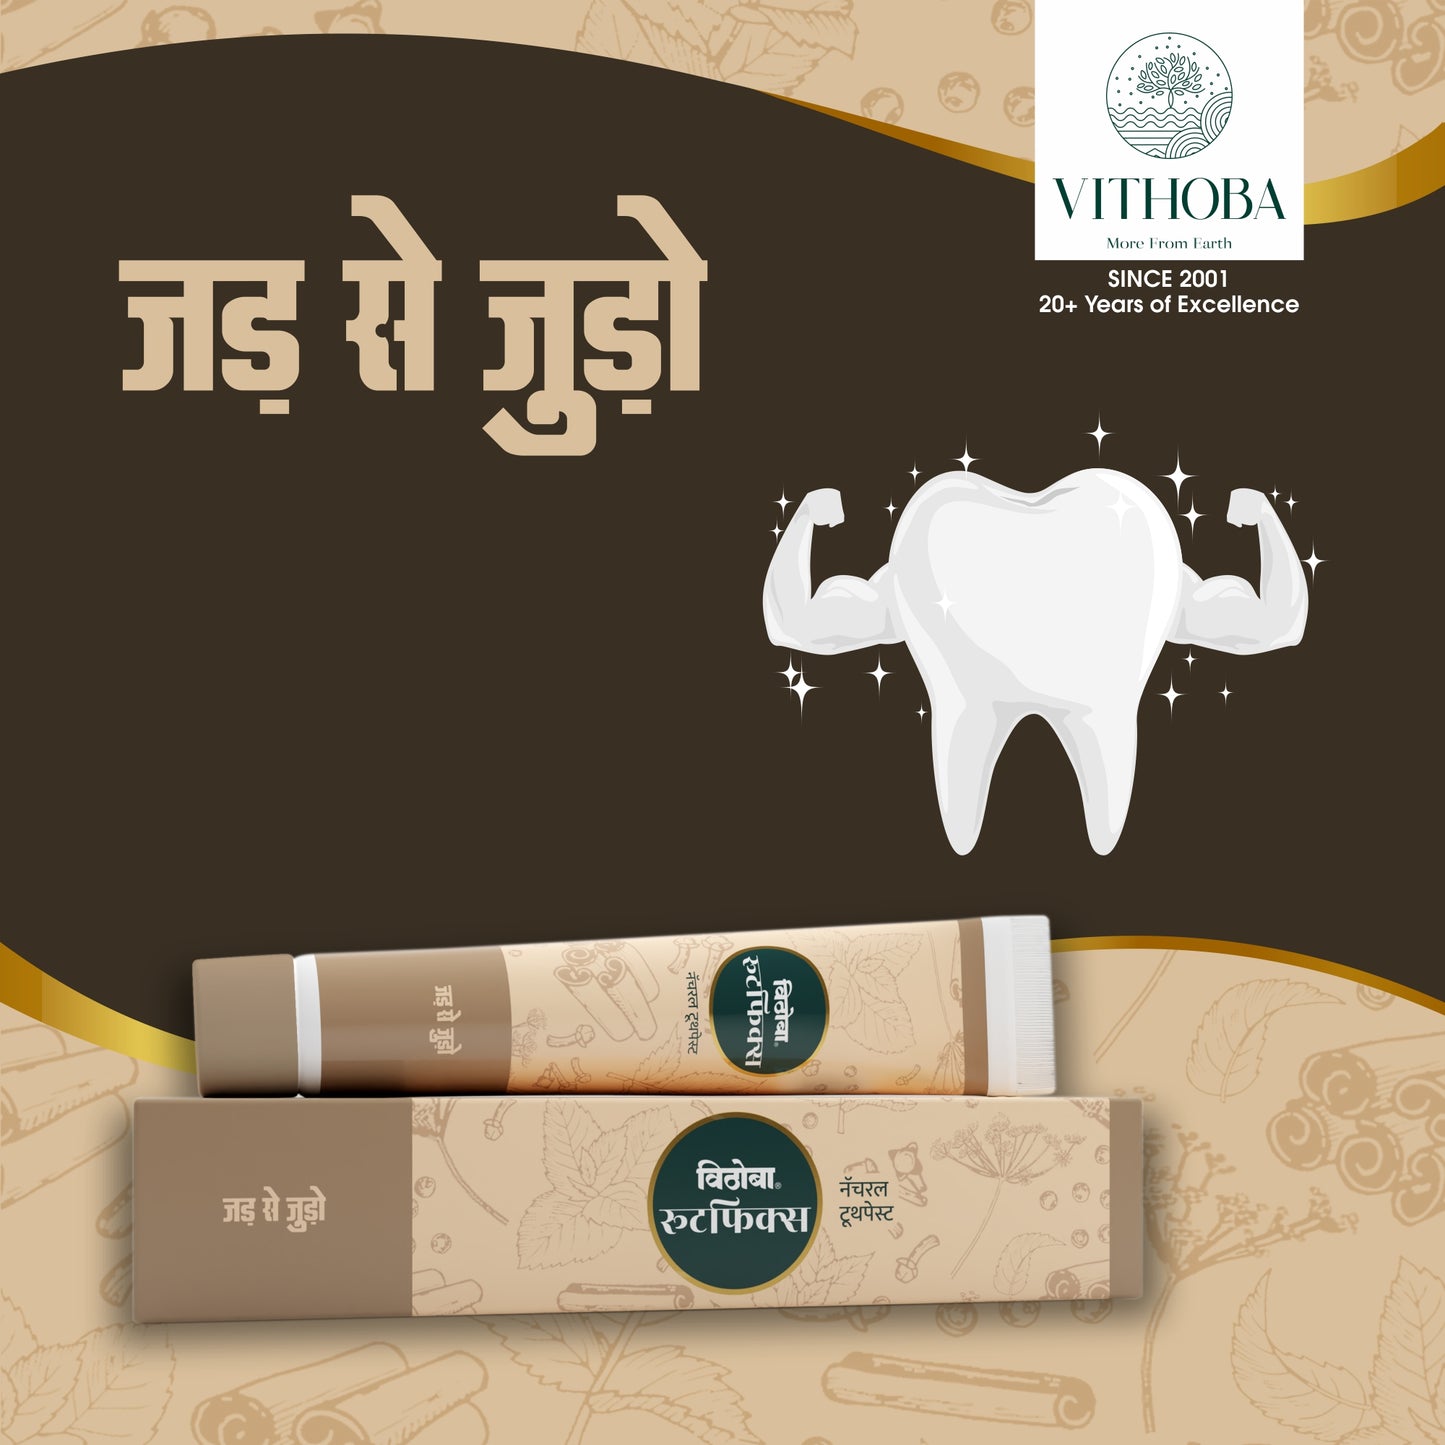 Vithoba Vaijayanthi Handcrafted Saffron Soap Bar & Vithoba Ayurvedic Rootfix Toothpaste Combo Pack - 40g+75g